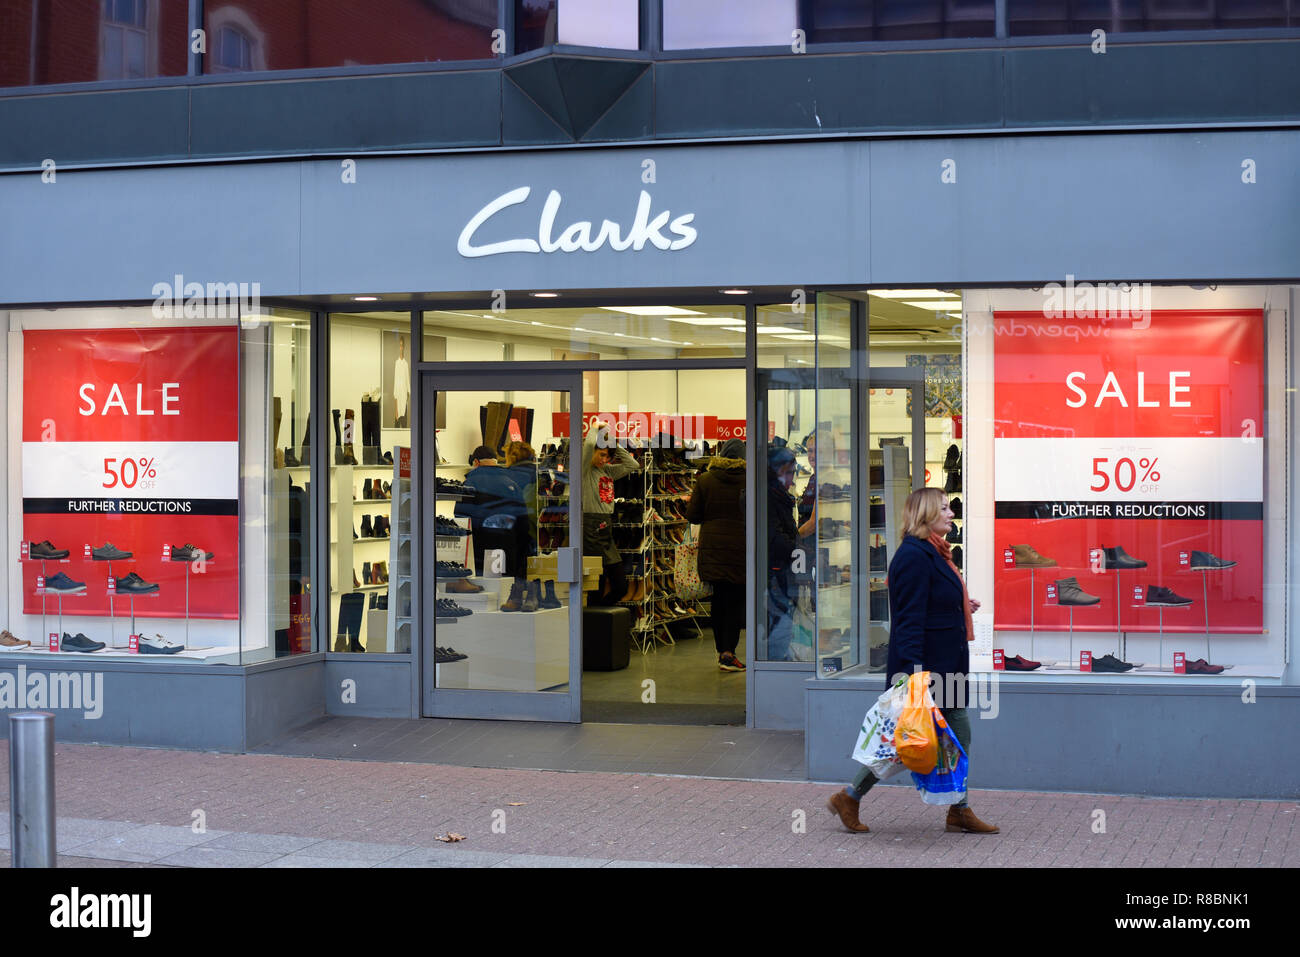 Tienda de Zapatos Clarks tienda en High Southend on Sea, Essex, Reino Unido, con carteles de "Se vende" la ventana de tienda. El 50% de la venta a